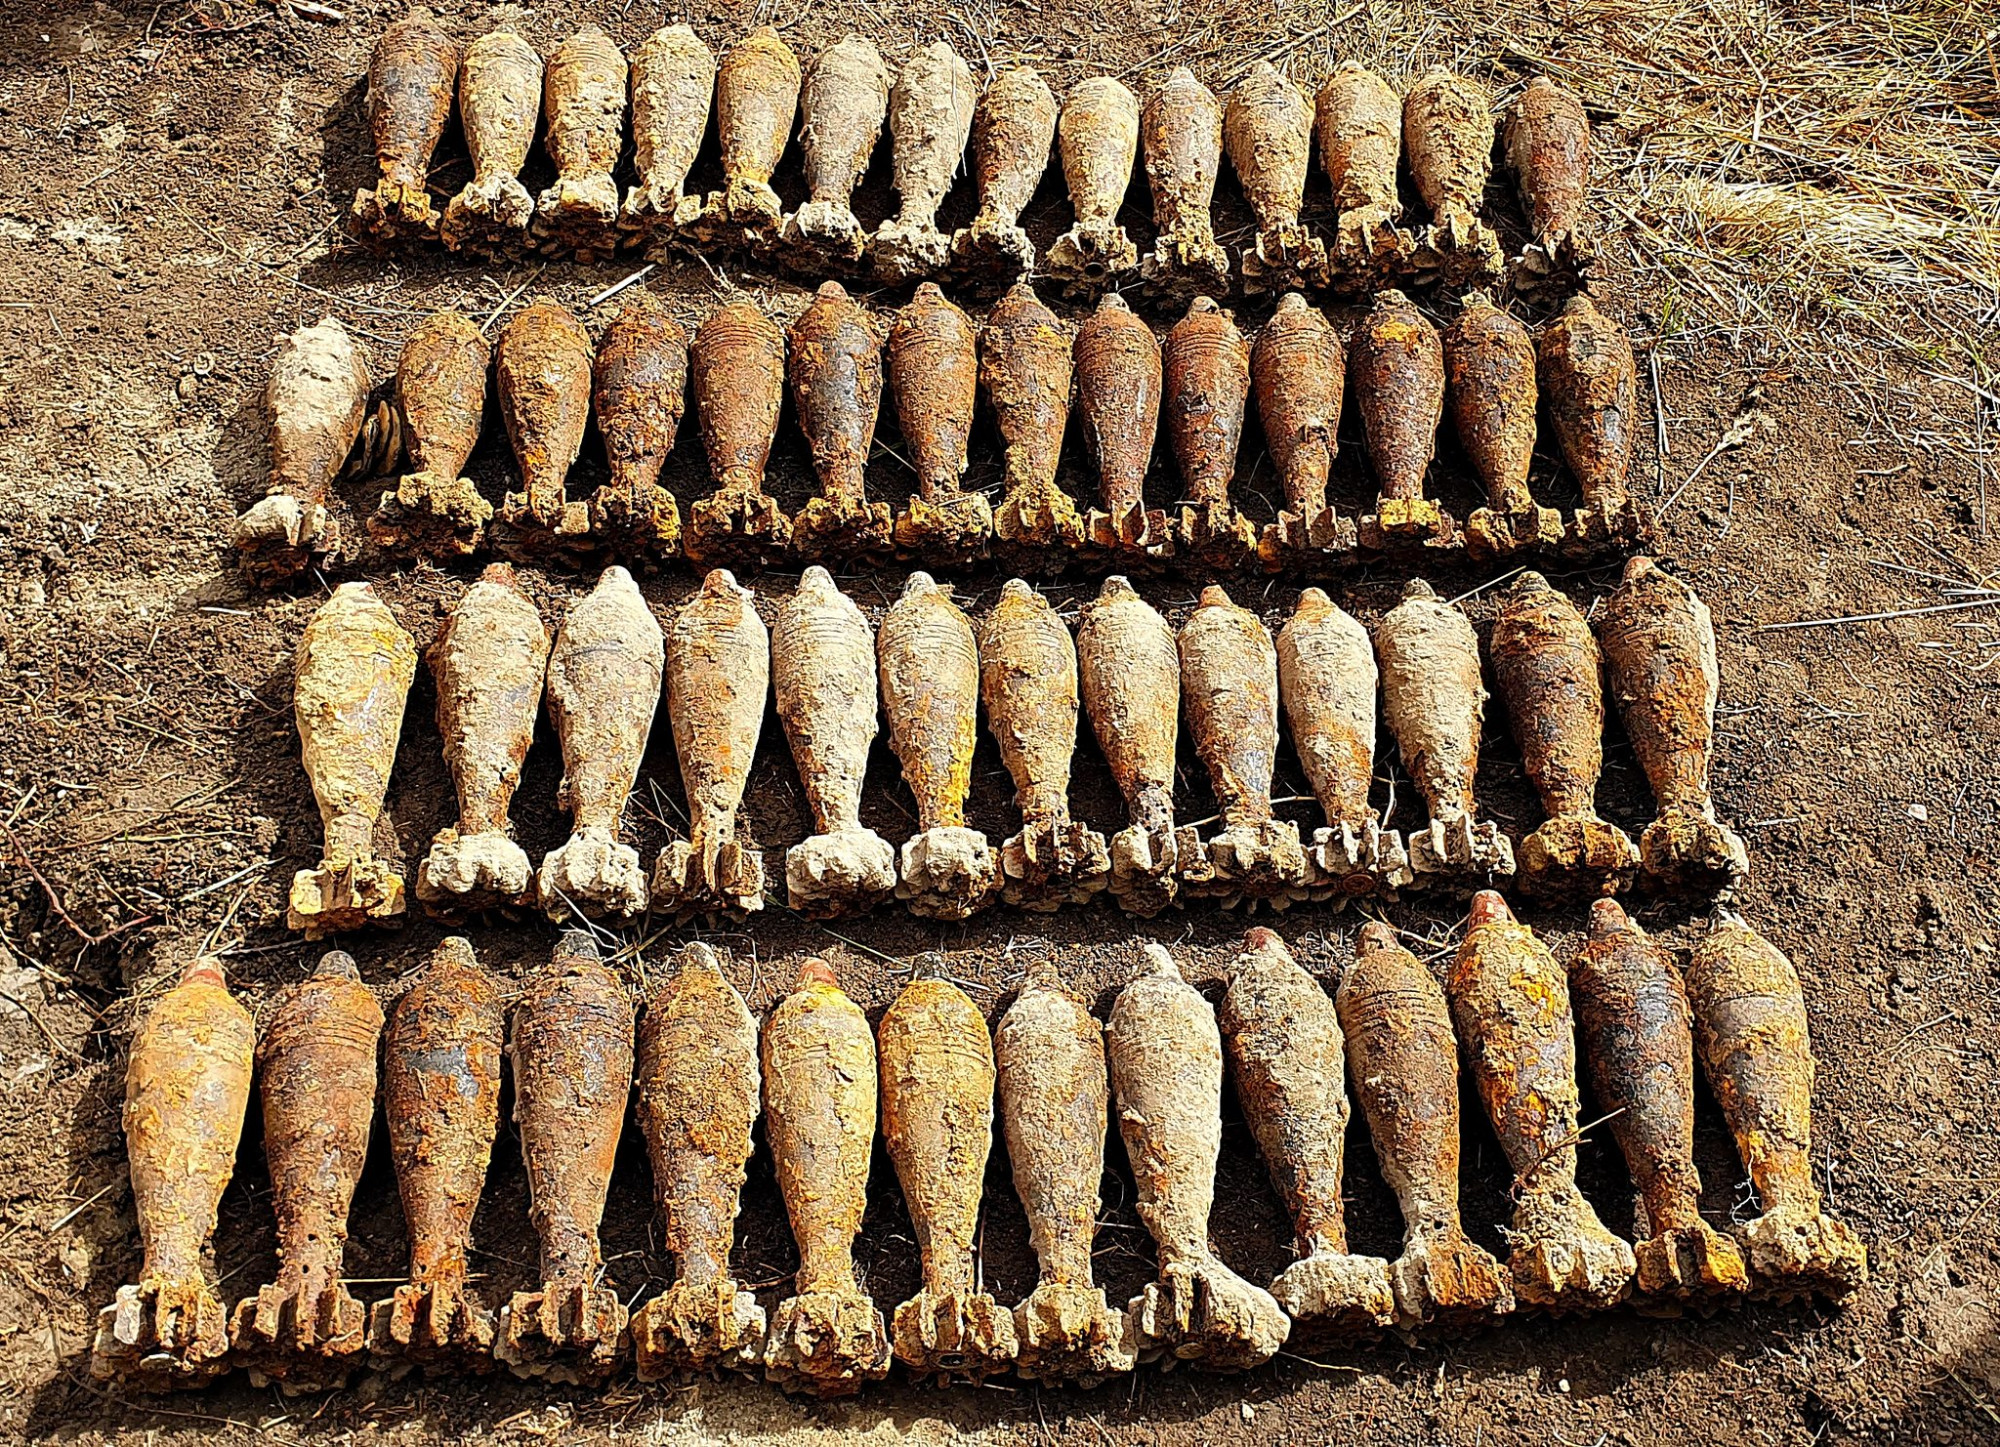 Több mint 150 aknavetőgránát került elő egy szombathelyi kertből, ahol eredetileg csak pöcegödröt akartak ásni